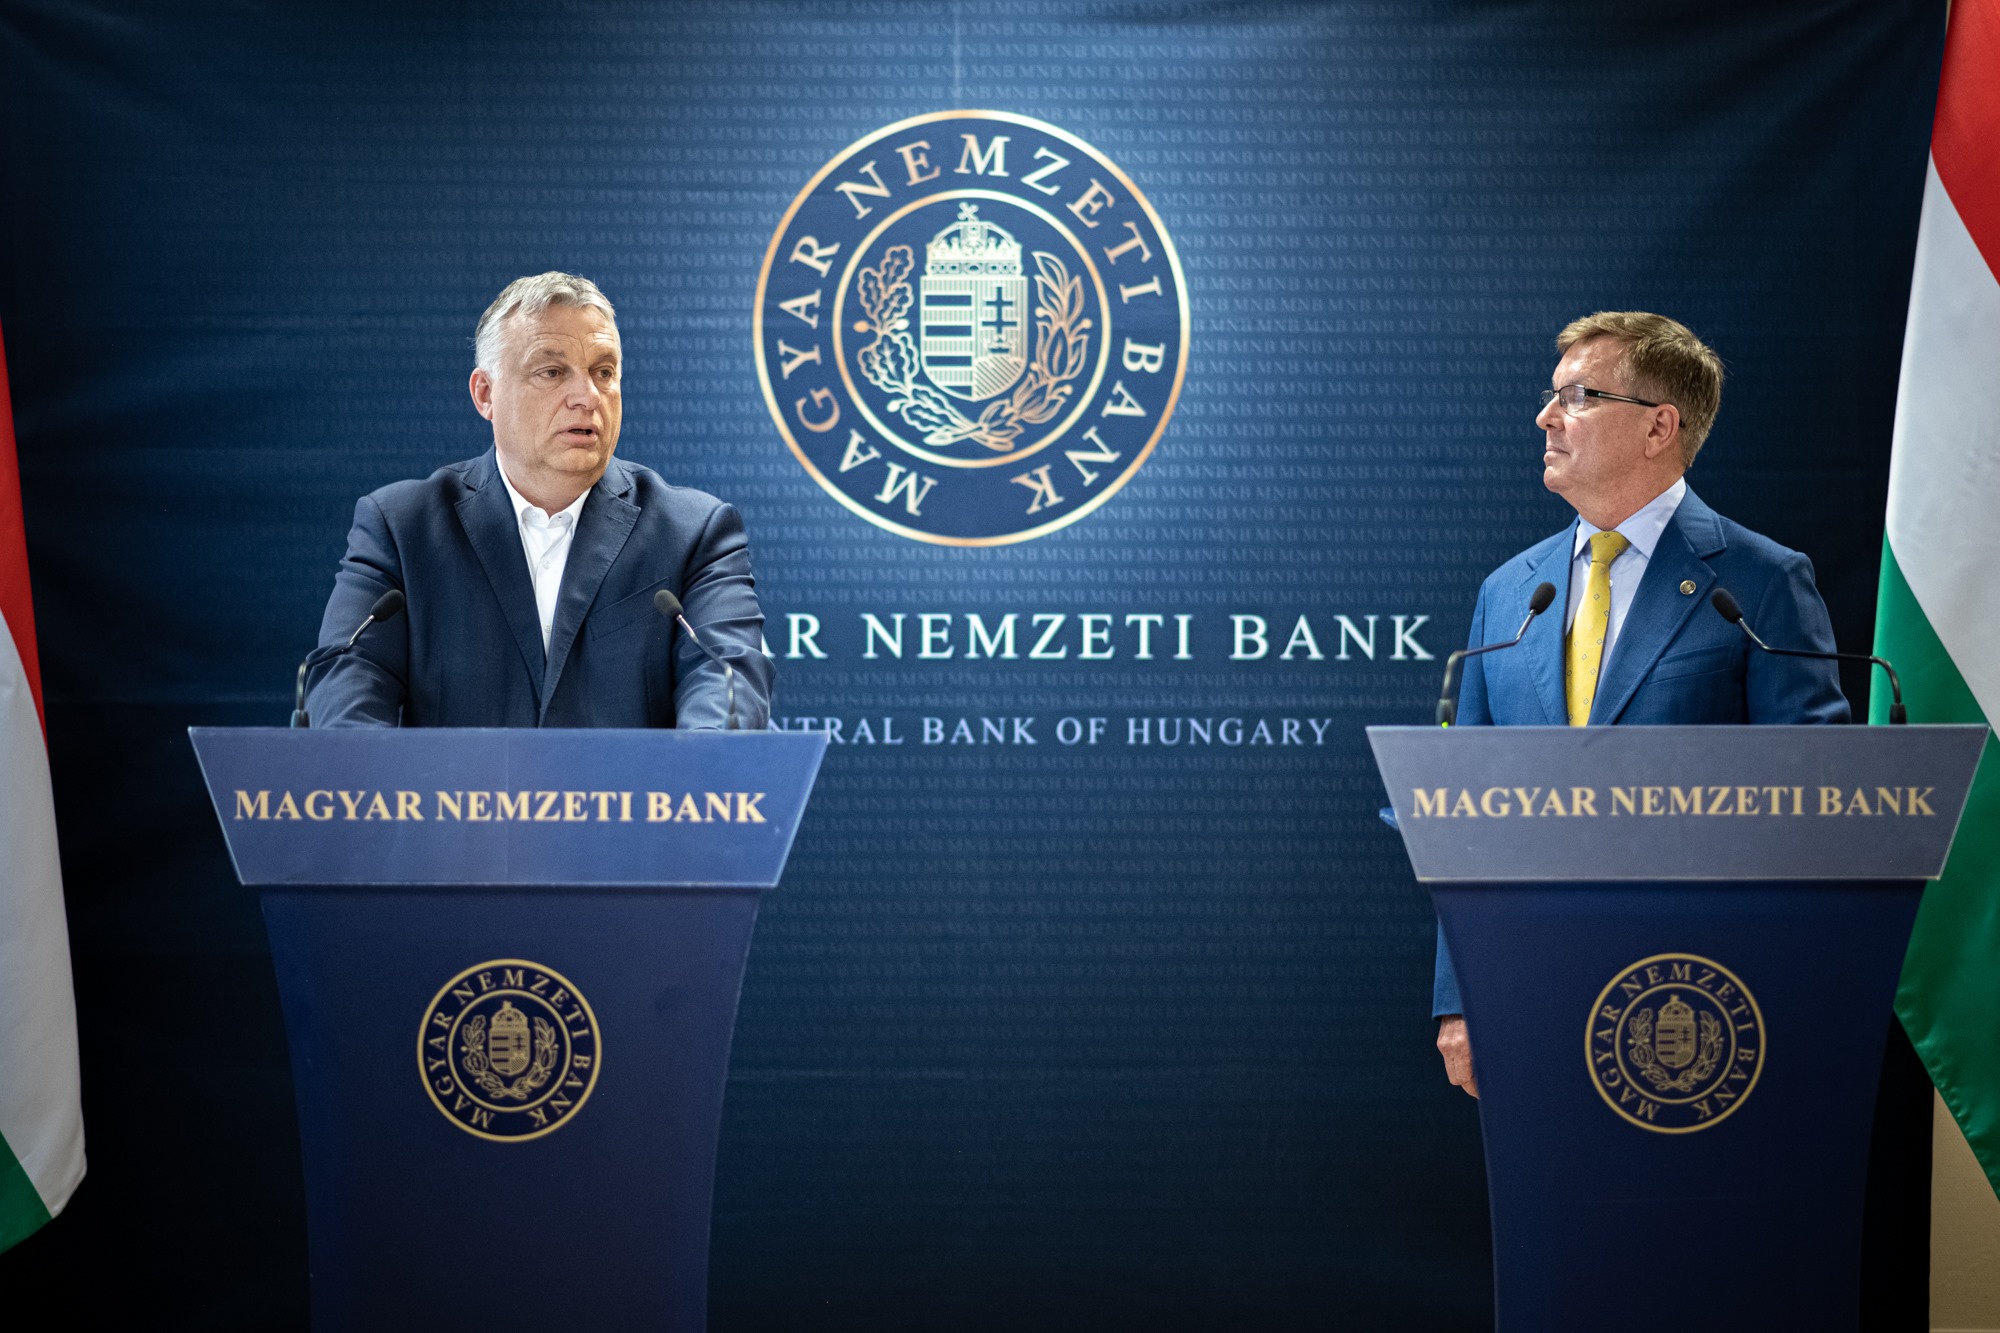 национальный банк венгрии орбан